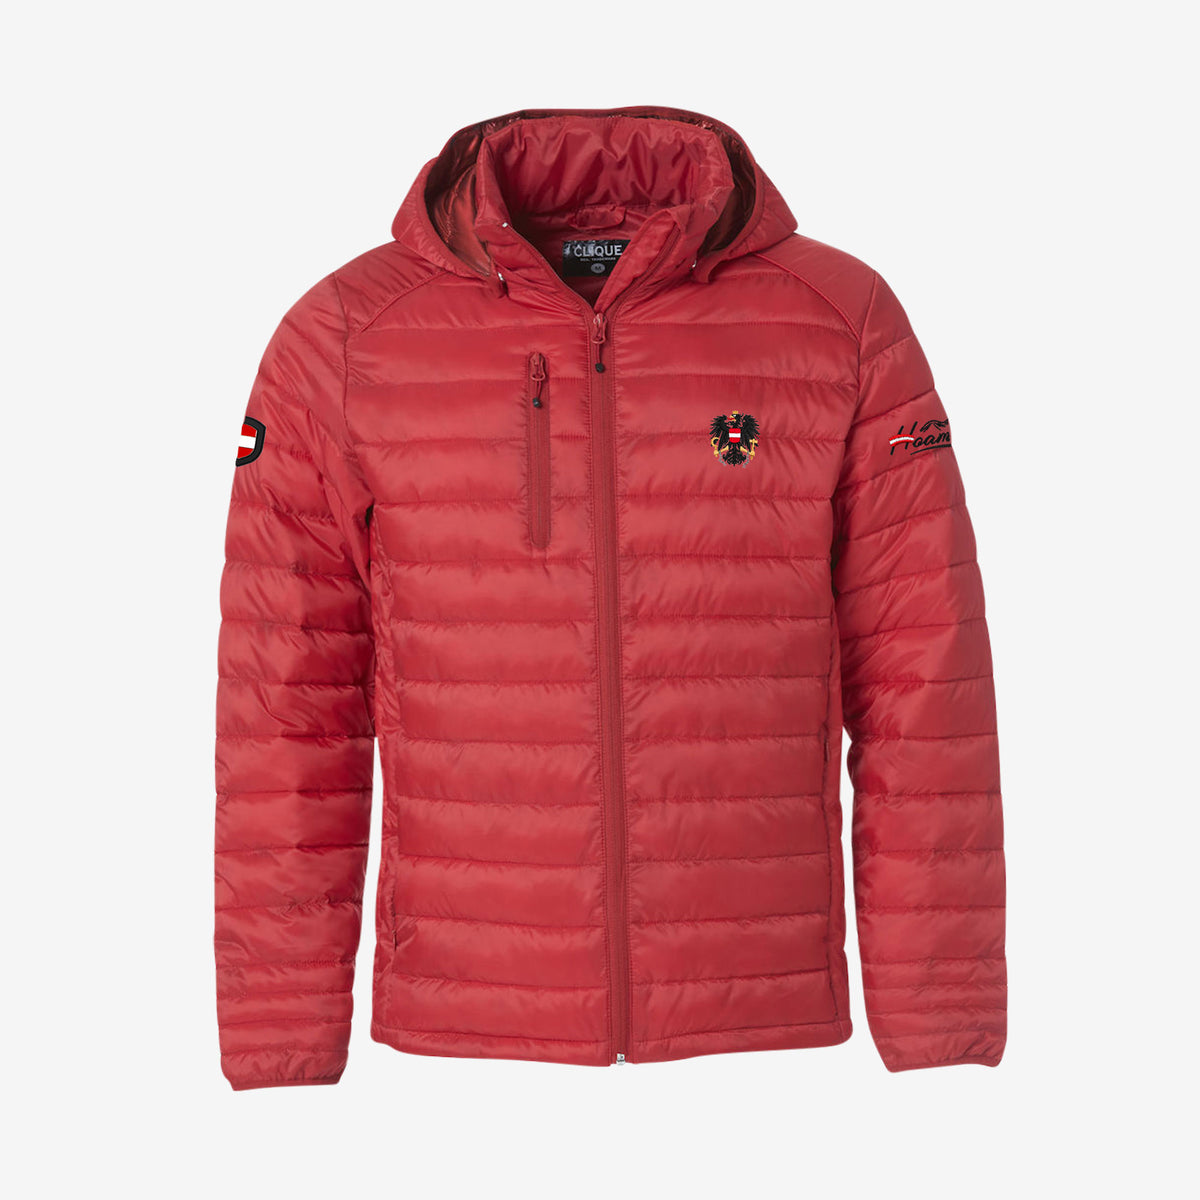 Rote Österreich Jacke Herren kaufen Hoamatkult #Farbe_Rot